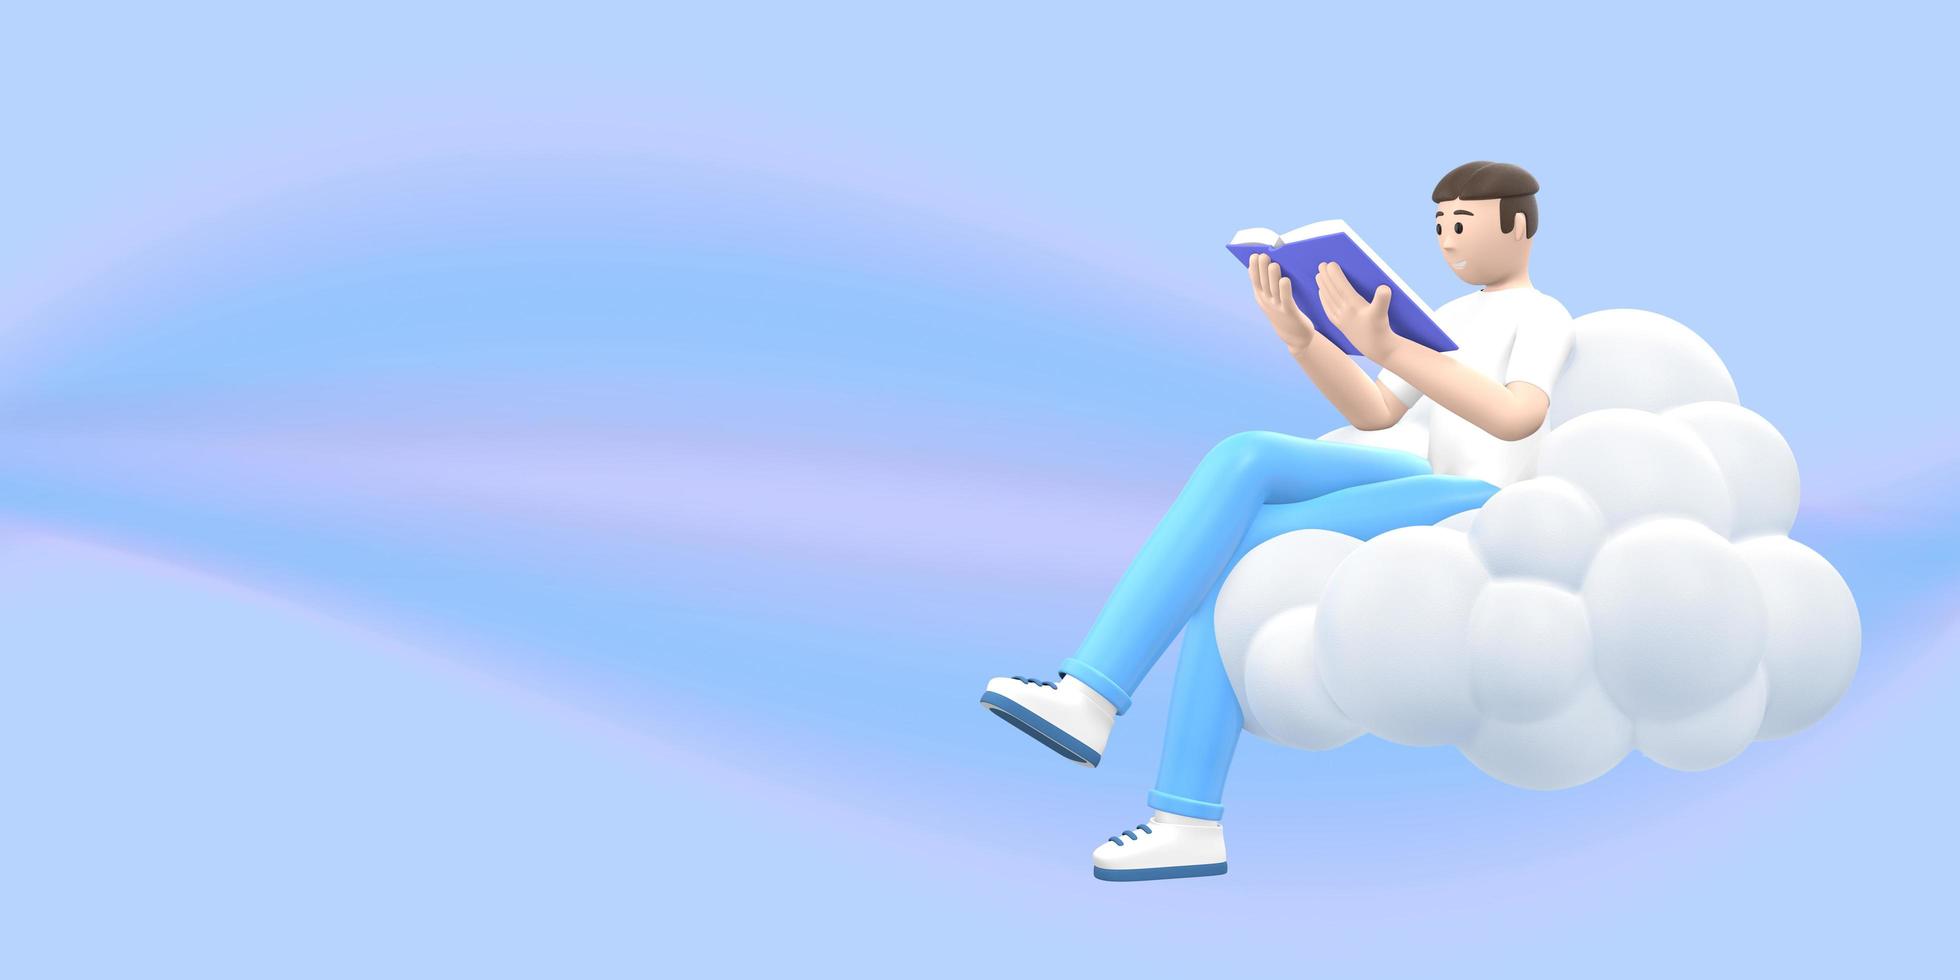 fanático de la literatura, un joven en el cielo en una nube está leyendo un libro. gente de dibujos animados divertidos y abstractos sobre un fondo rosa. representación 3d foto